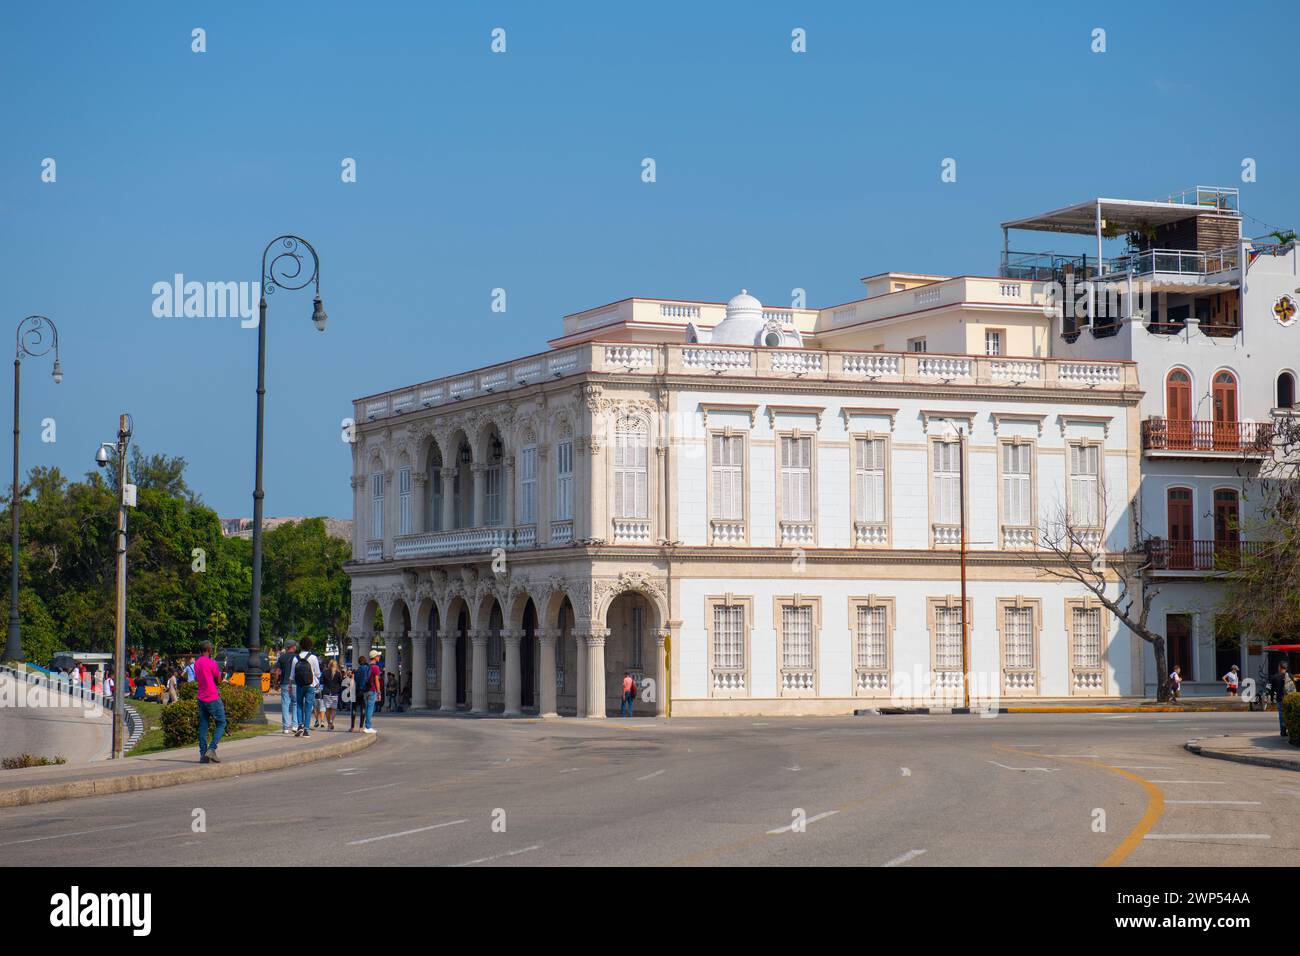 Musée national de la musique (Museo Nacional de la Musica) dans la vieille Havane (la Habana Vieja), Cuba. La vieille Havane est un site du patrimoine mondial. Banque D'Images